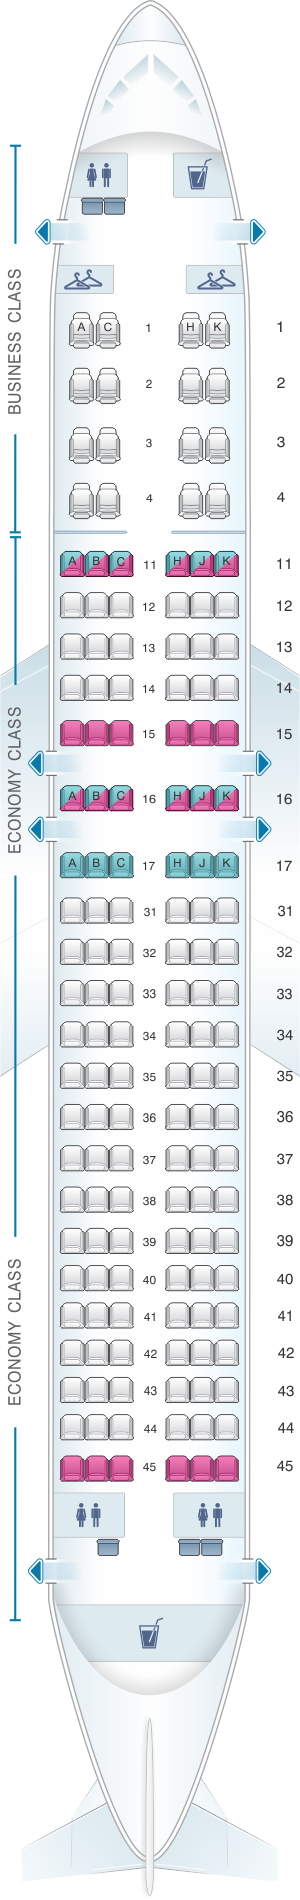 Seat Map Air Astana Airbus A320 232 | SeatMaestro